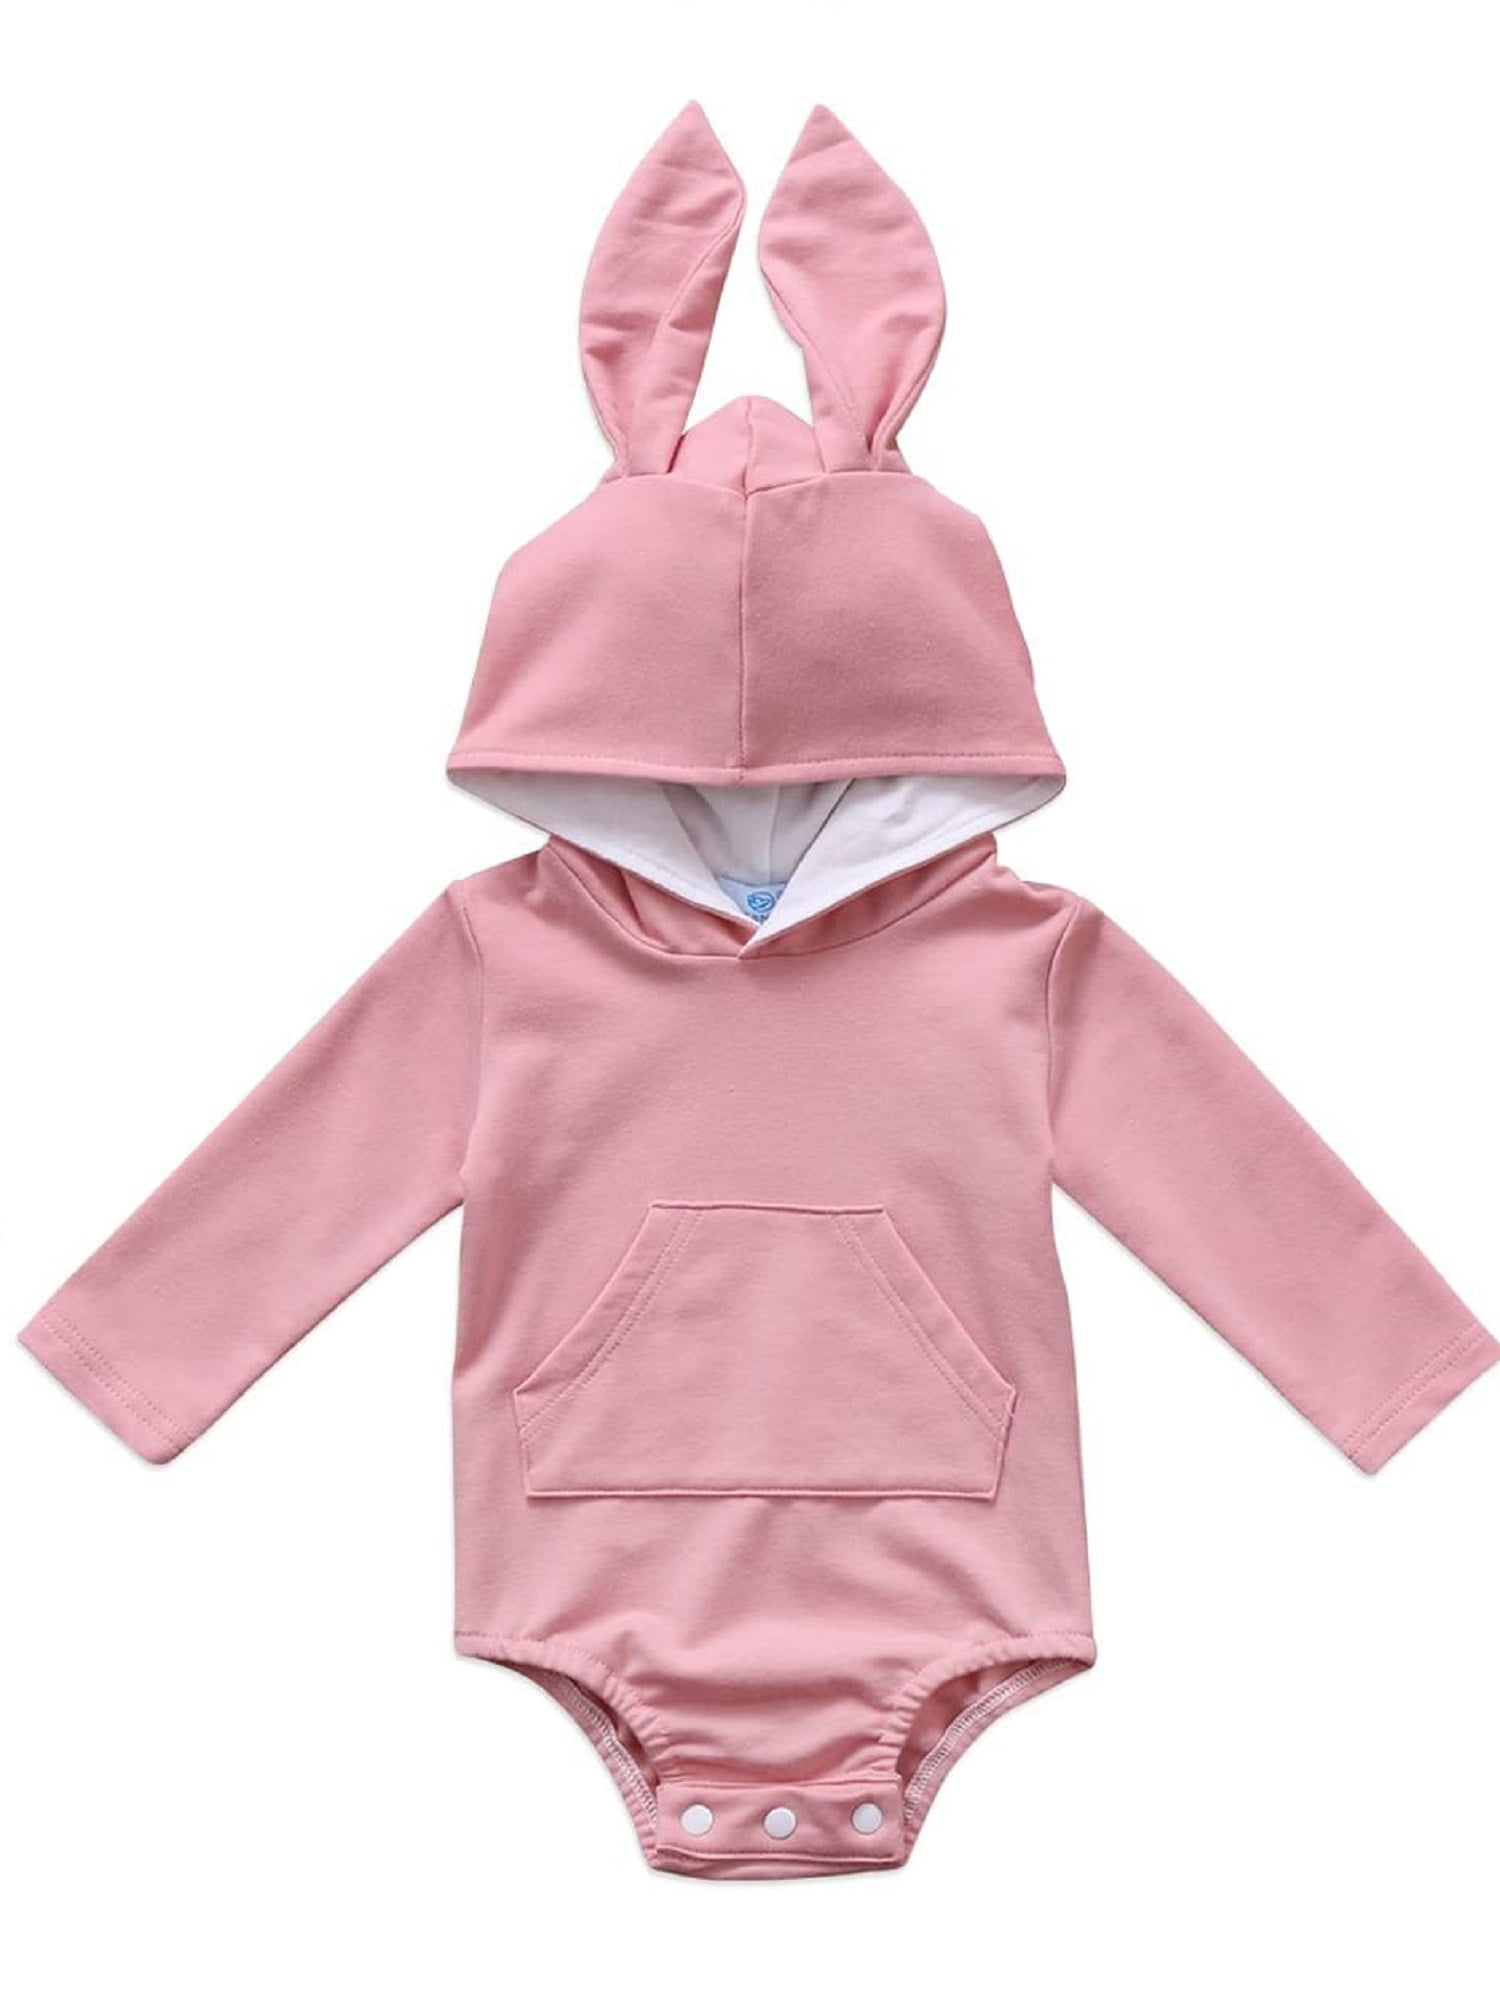 Infant Magical Rabbit Long Sleeve Romper Onesie Bodysuit Jumpsuit